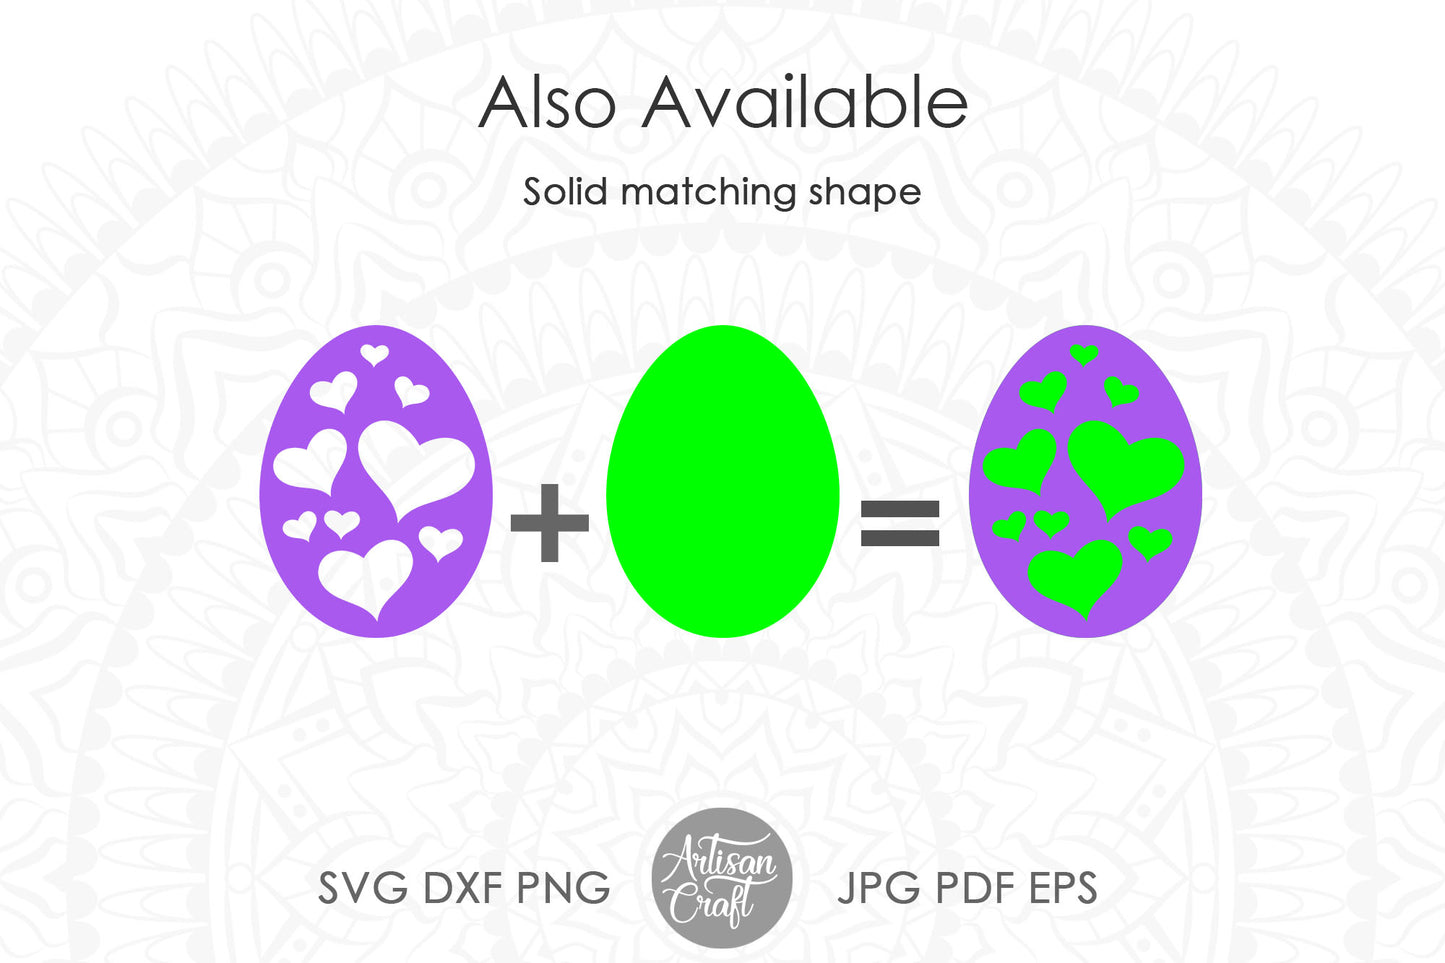 Easter egg SVG bundle and PNG for sublimation